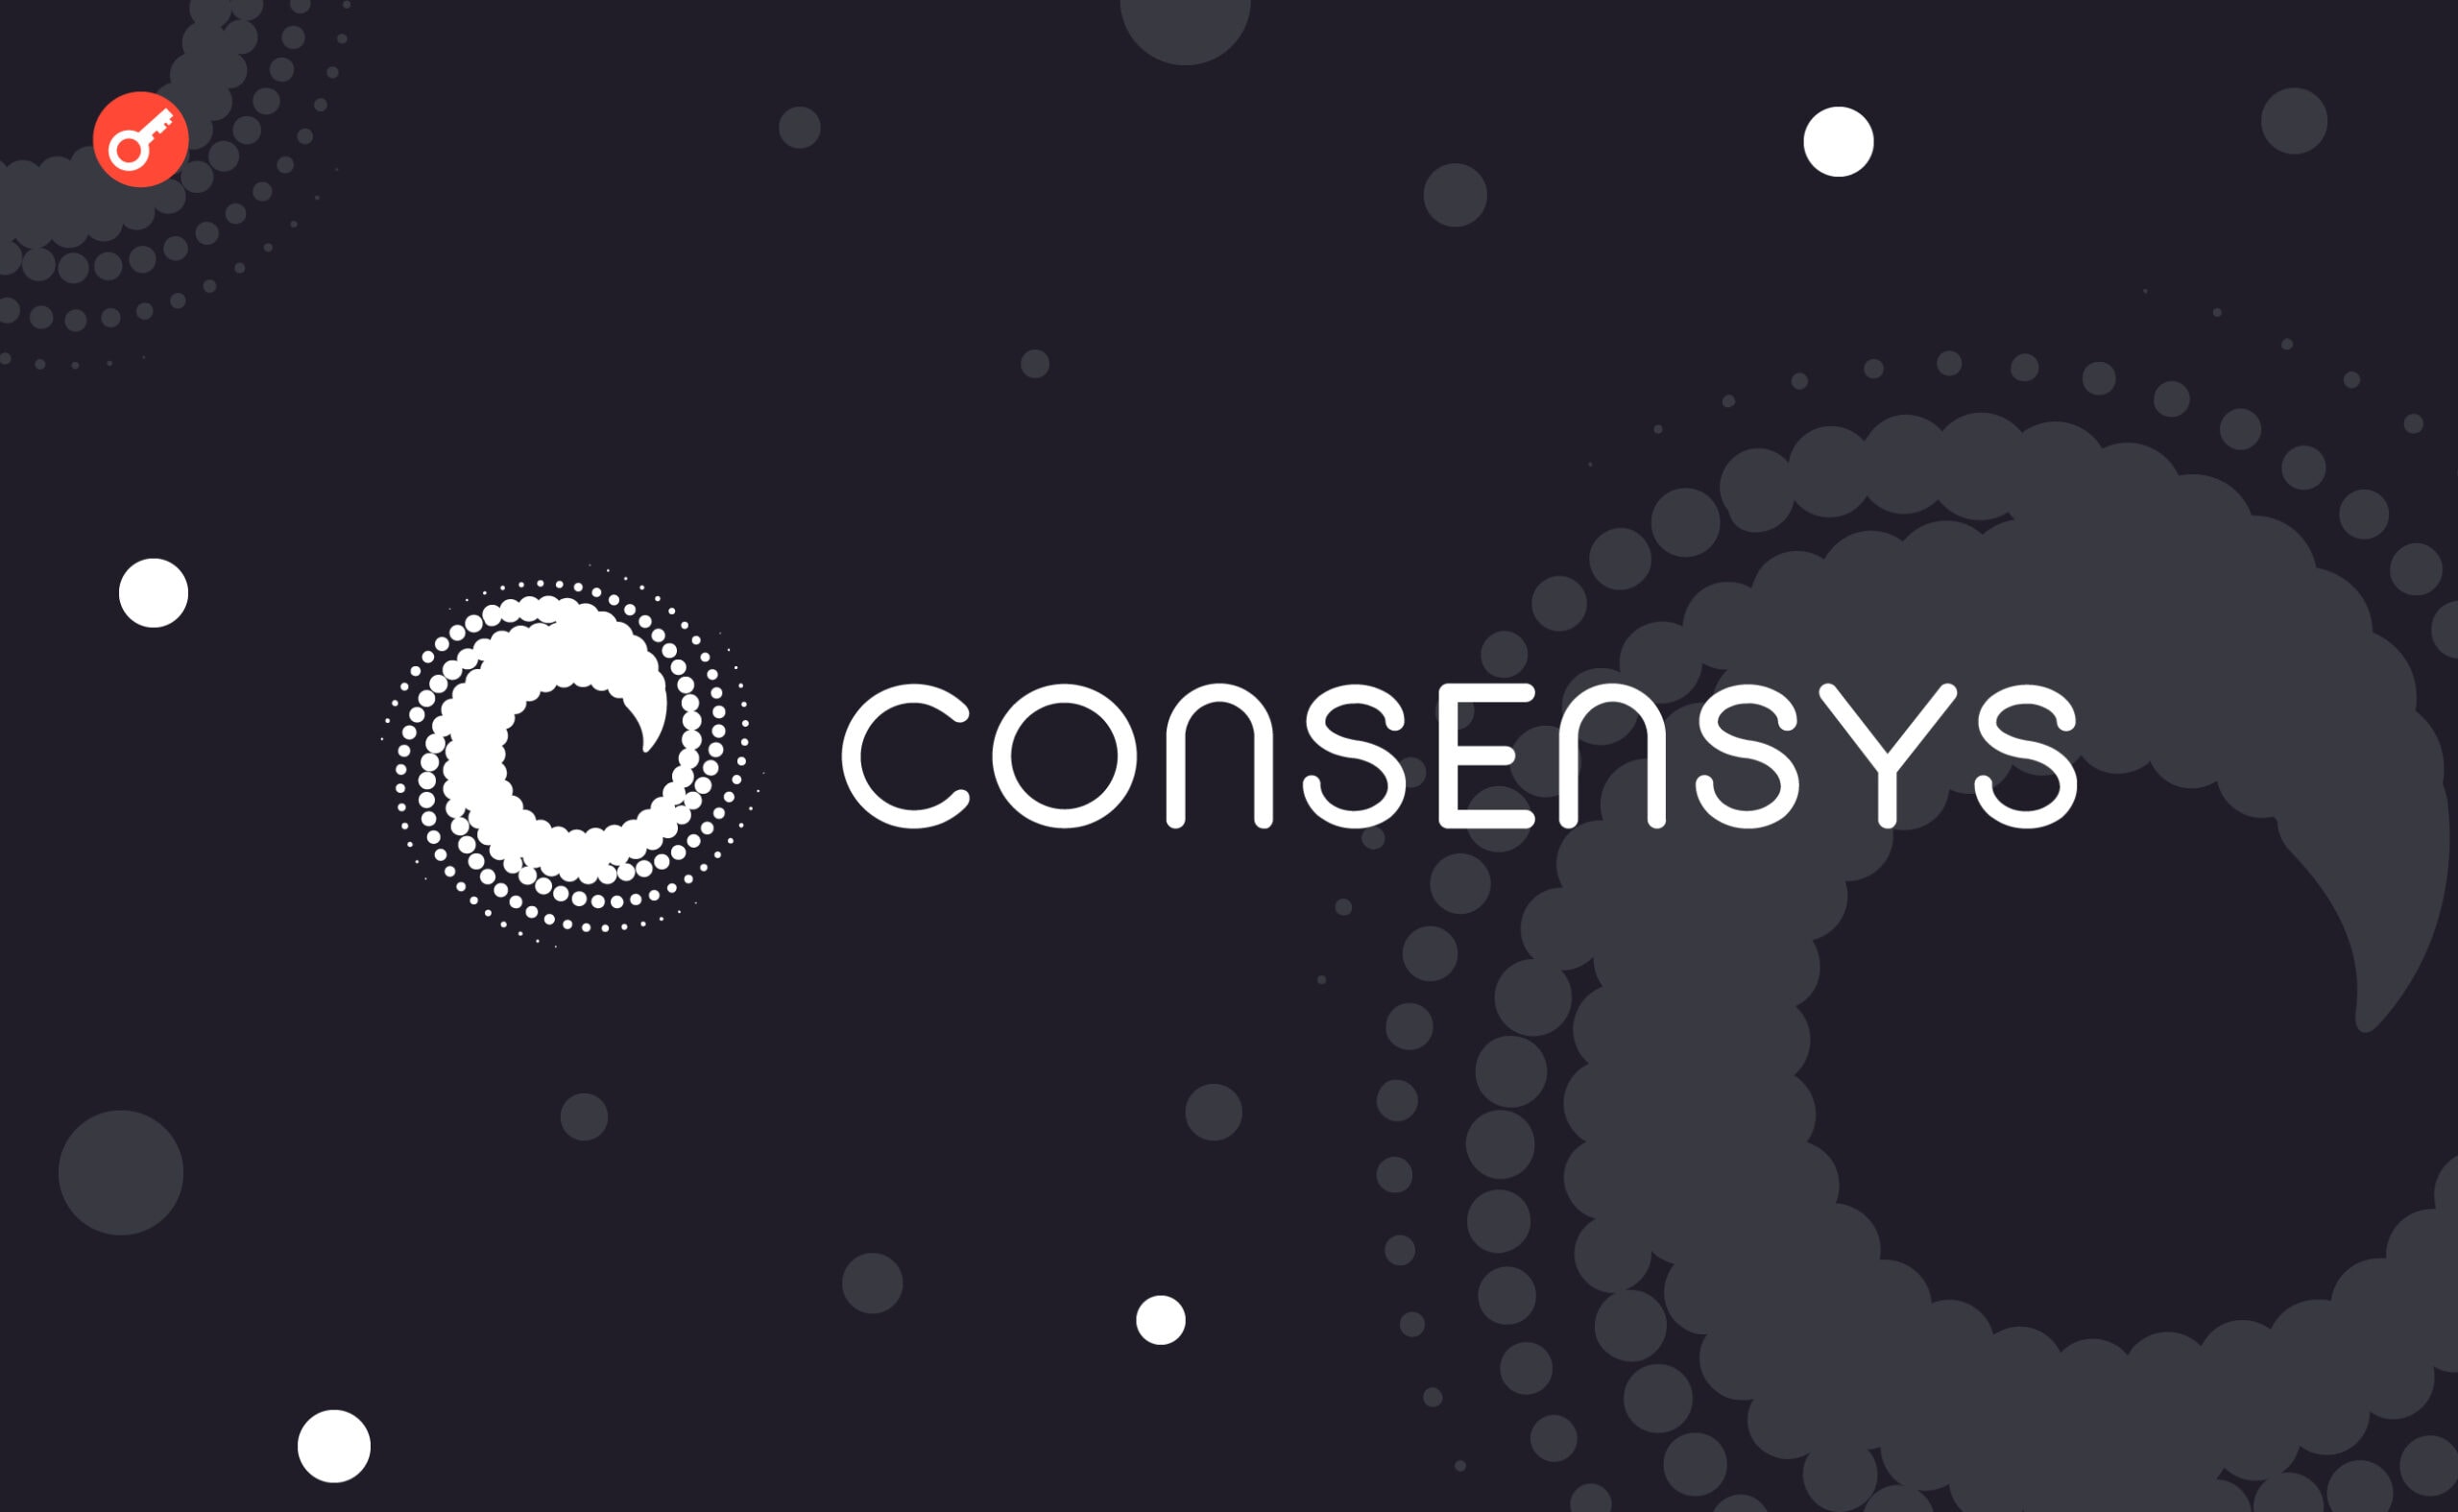 ConsenSys спростувала чутки про фінансові проблеми компанії. Головний колаж новини.